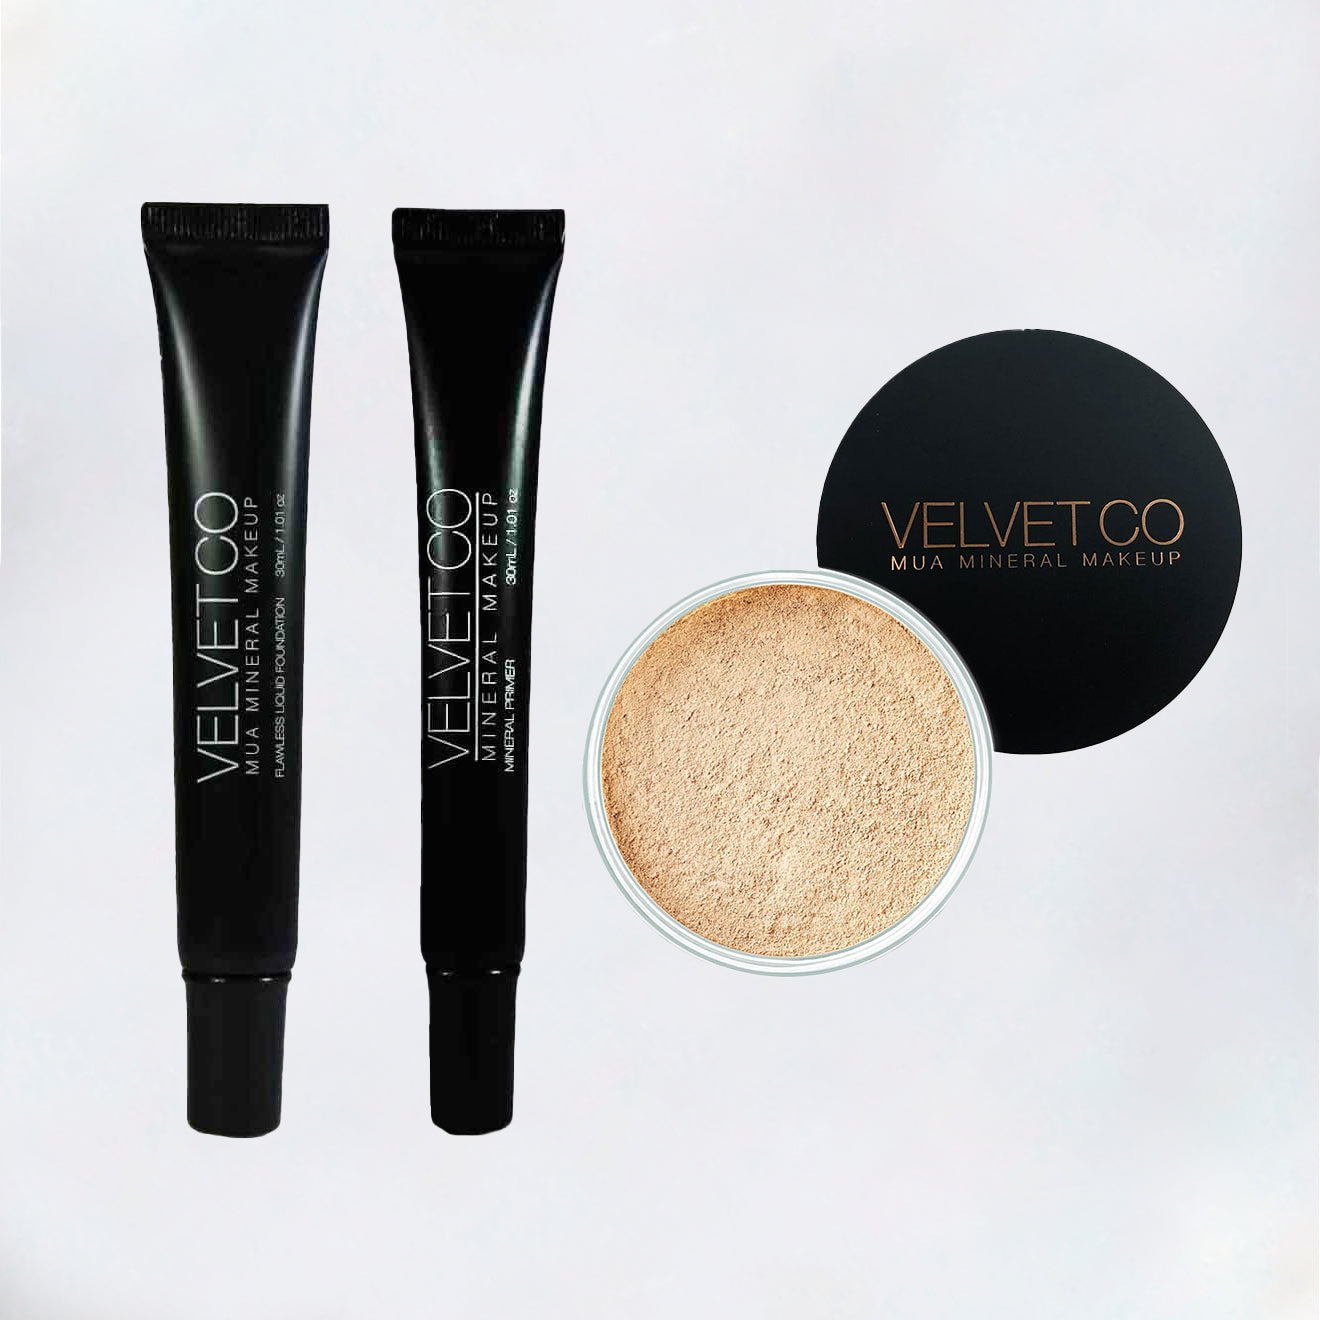 Velvet Co Mineral Makeup Homecare Kit